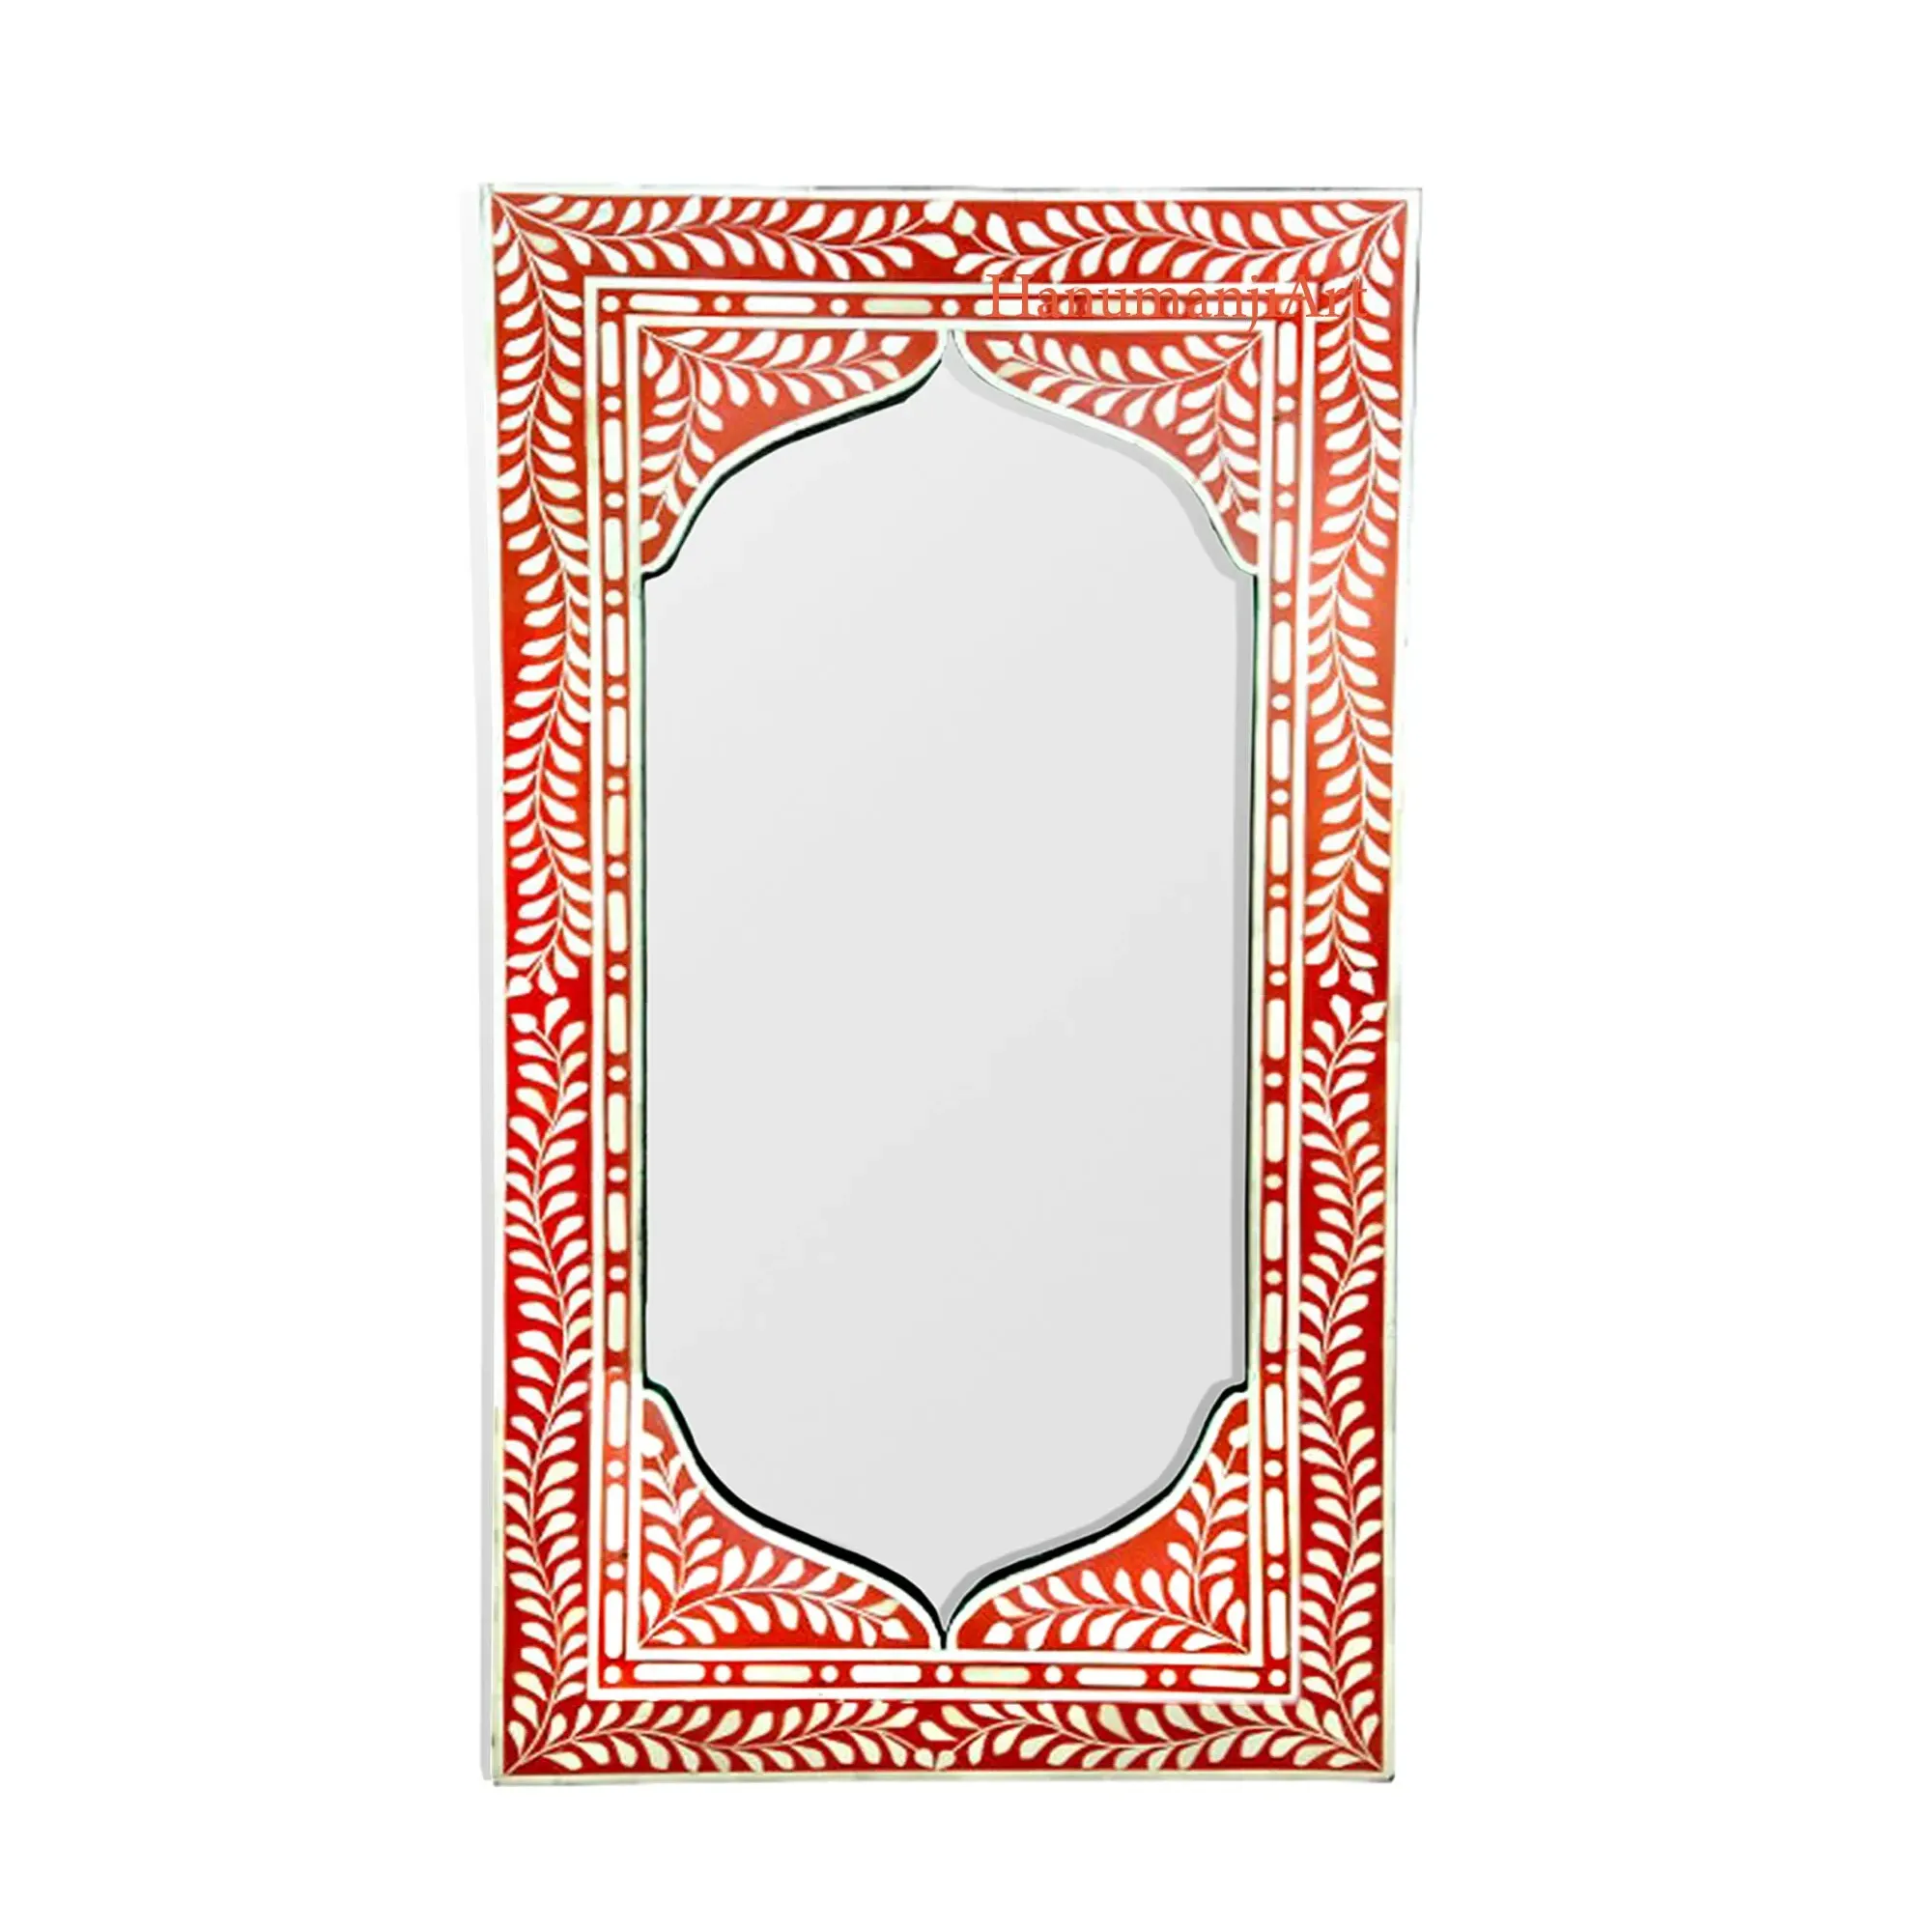 Bingkai cermin buatan tangan untuk dinding tulang Inlay perbatasan bentuk persegi panjang cermin dinding pemasok & produsen oleh India